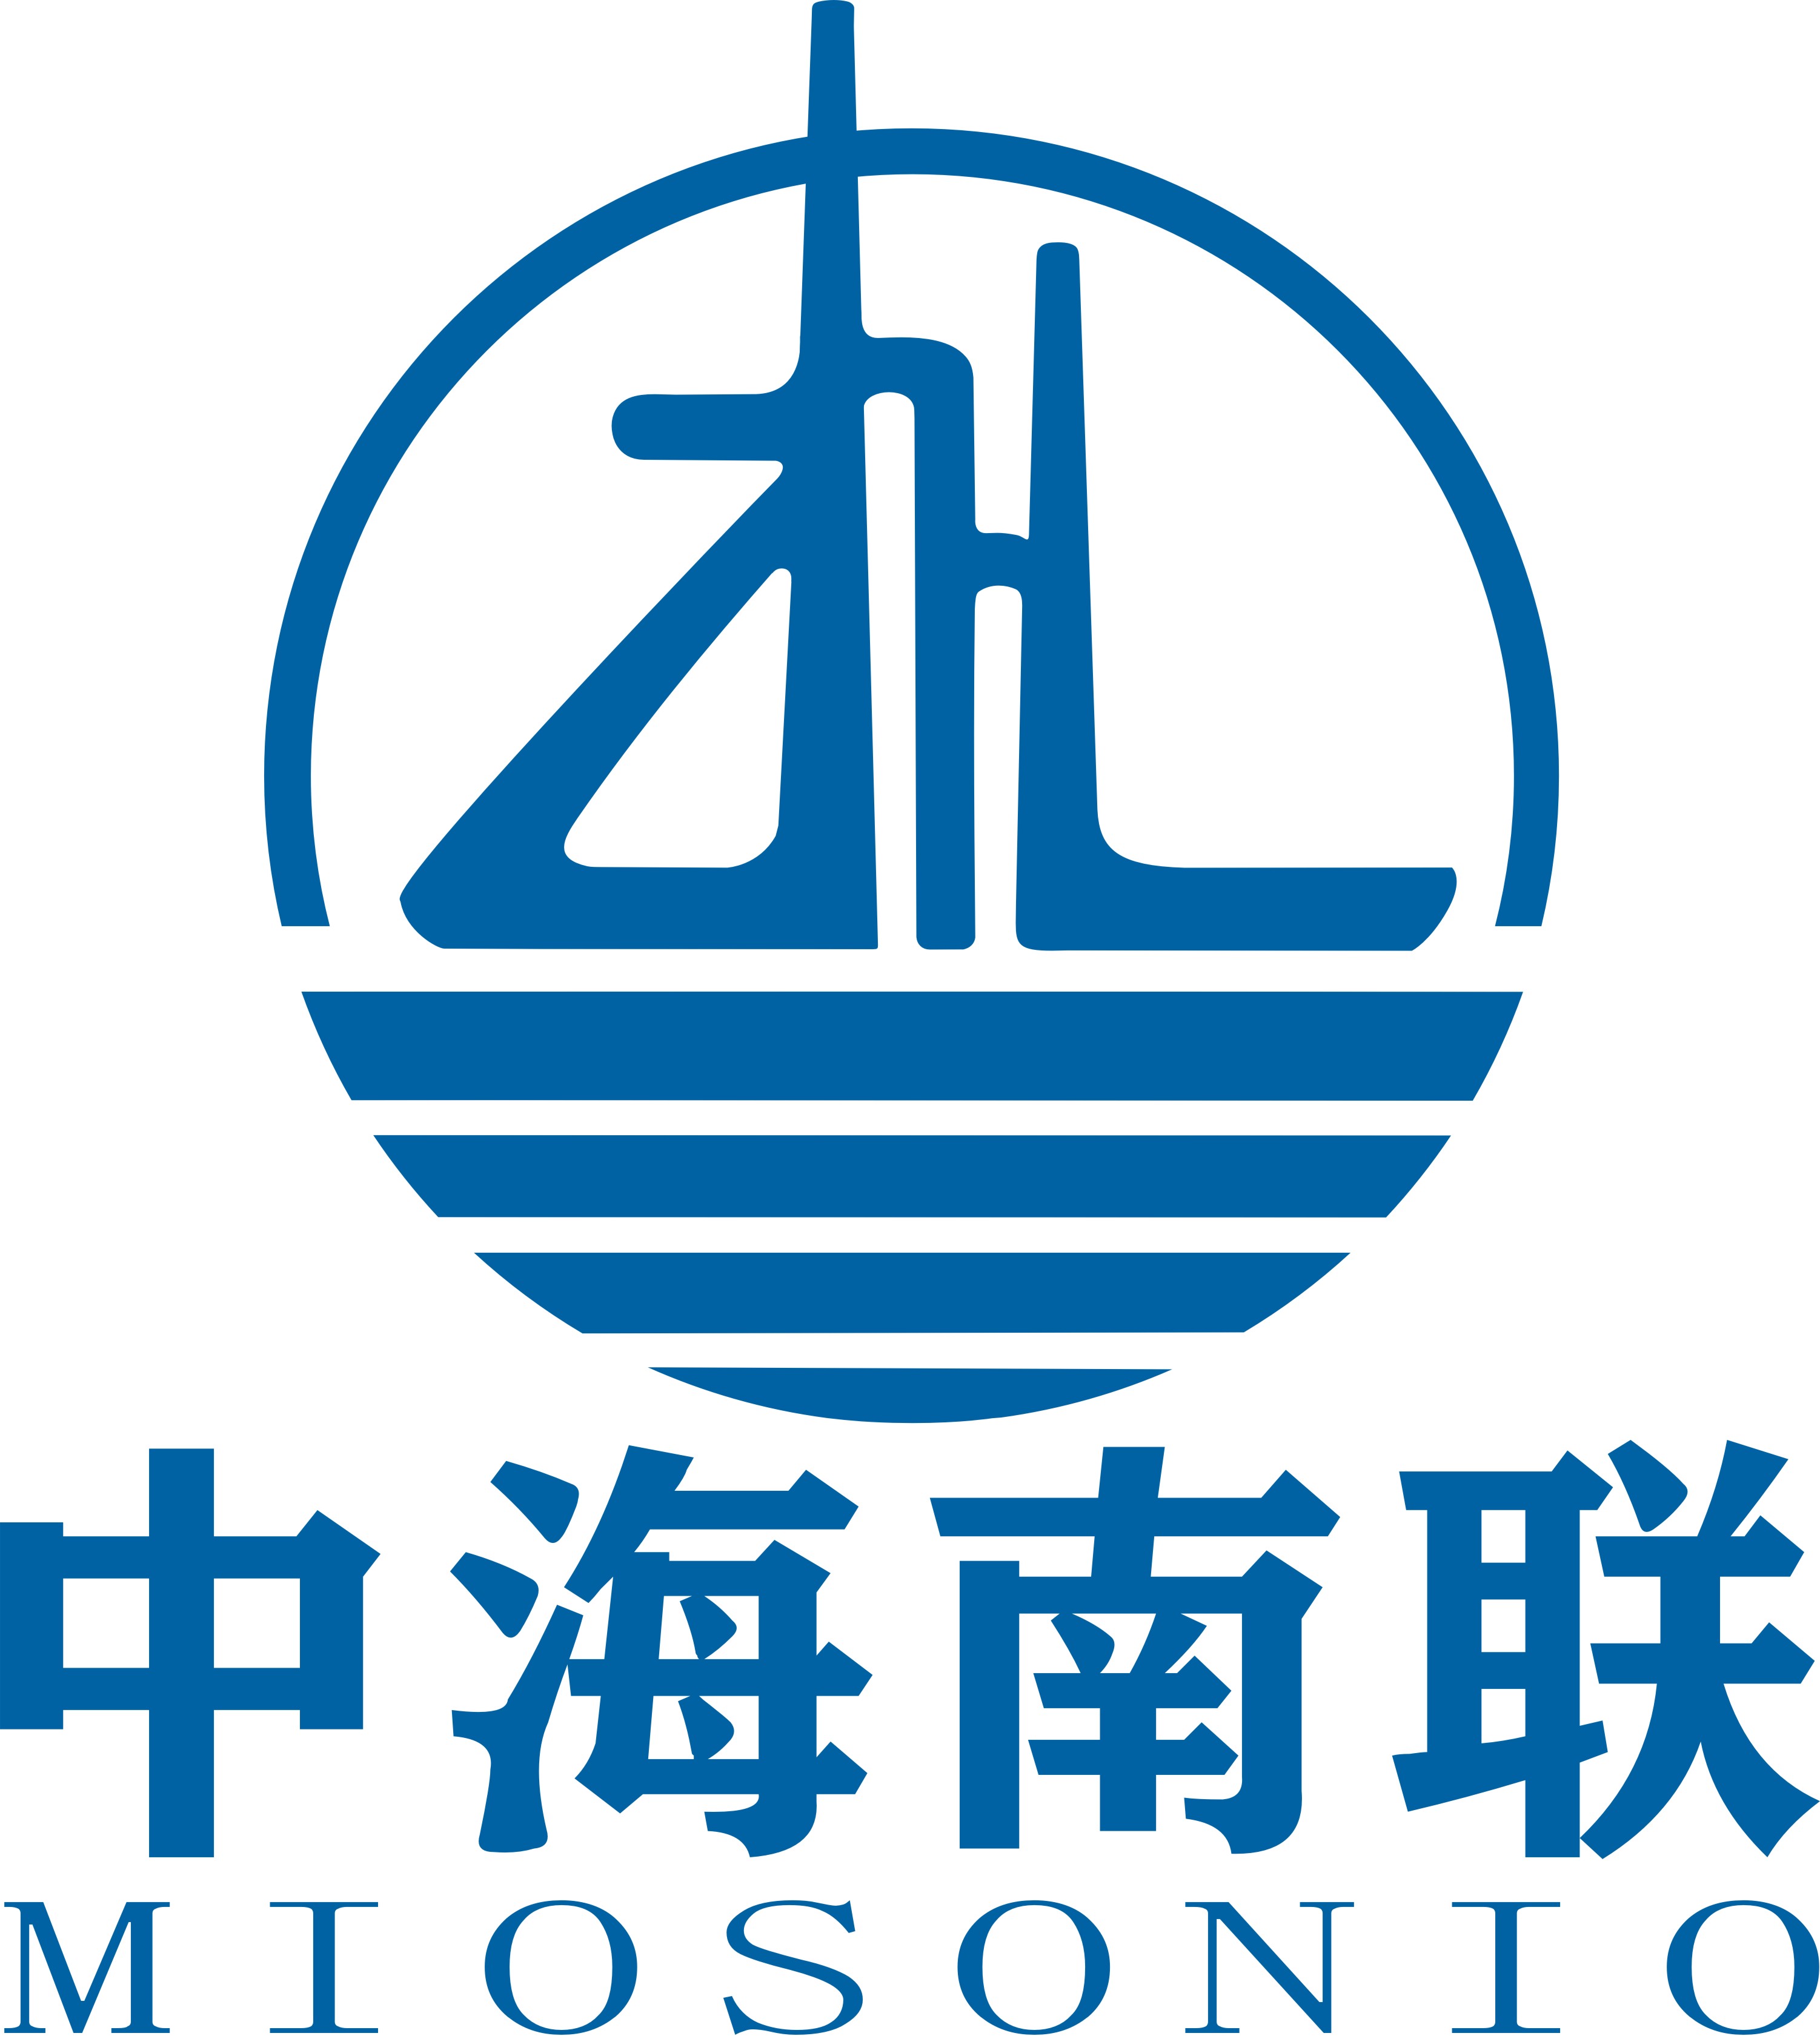 广东中海南联能源有限公司上海分公司